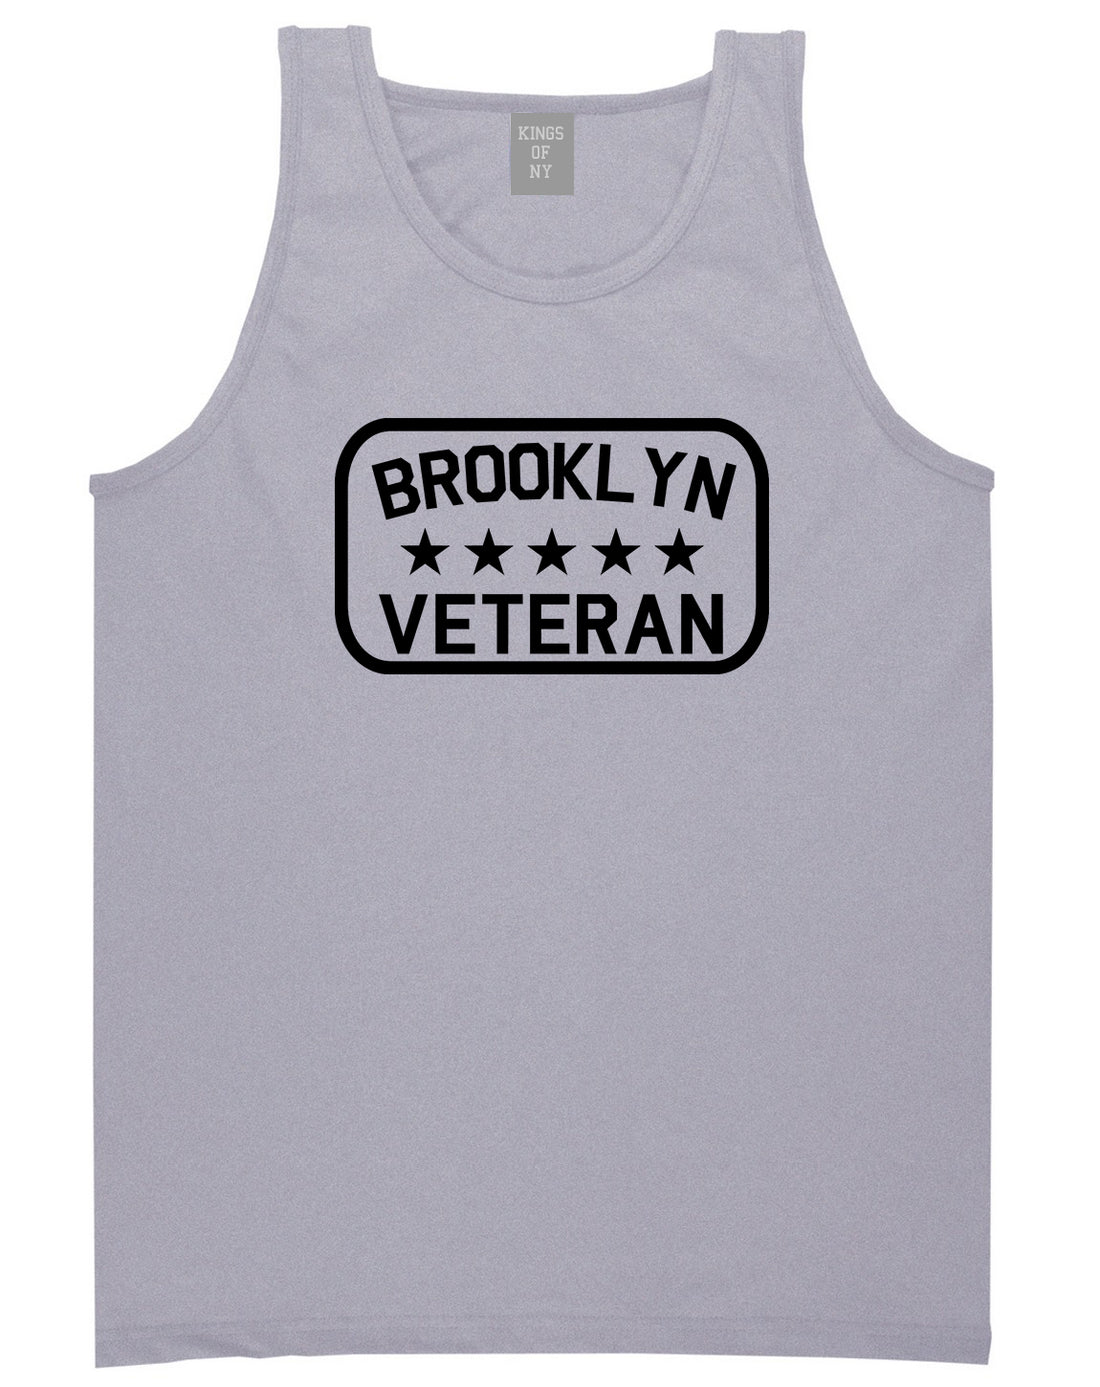 Brooklyn Veteran Mens Tank Top Shirt Grey